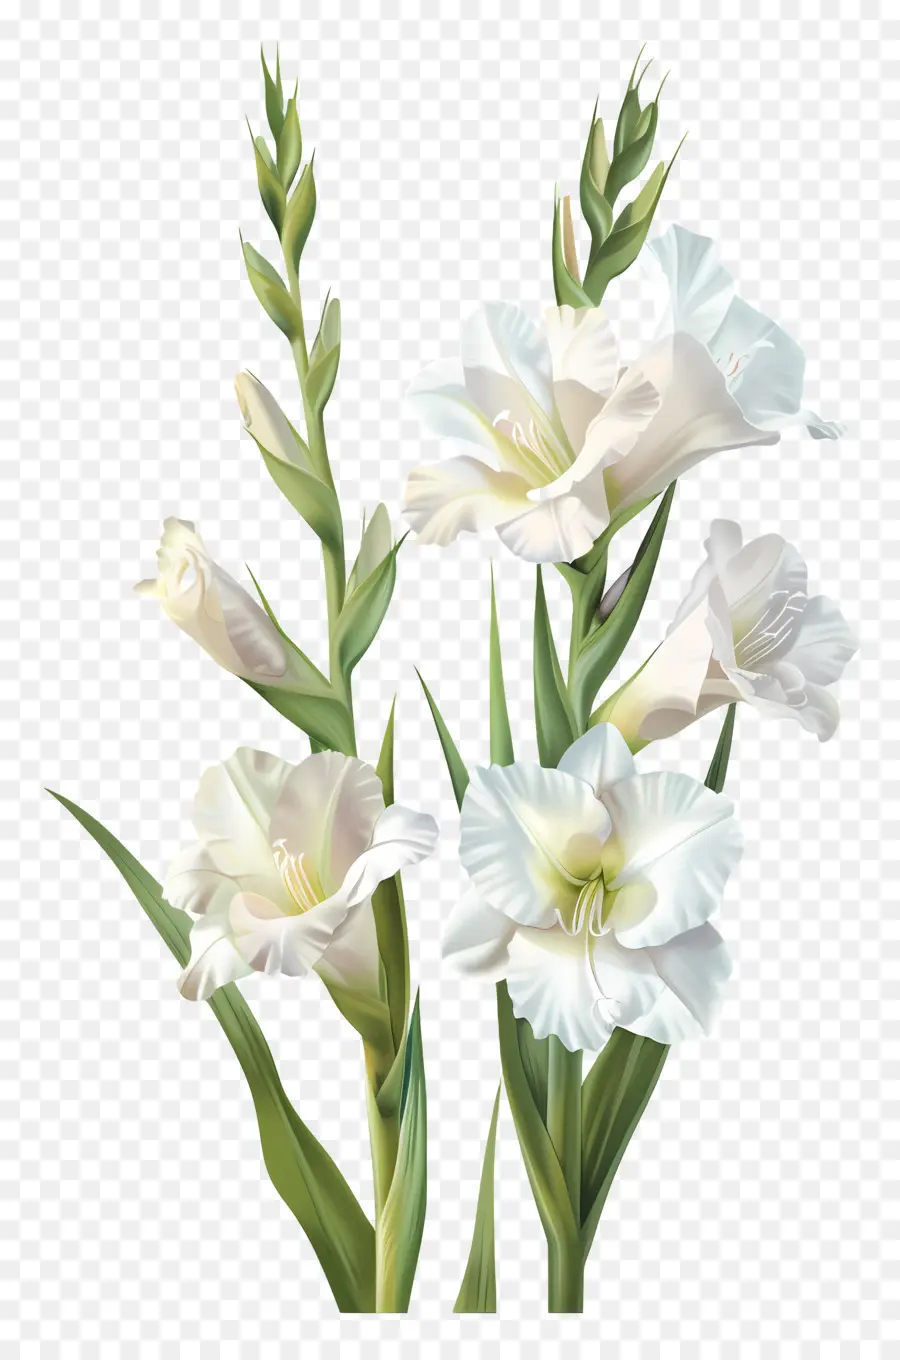 weiße Blume - Große weiße Blume mit zusammengerollten Blütenblättern